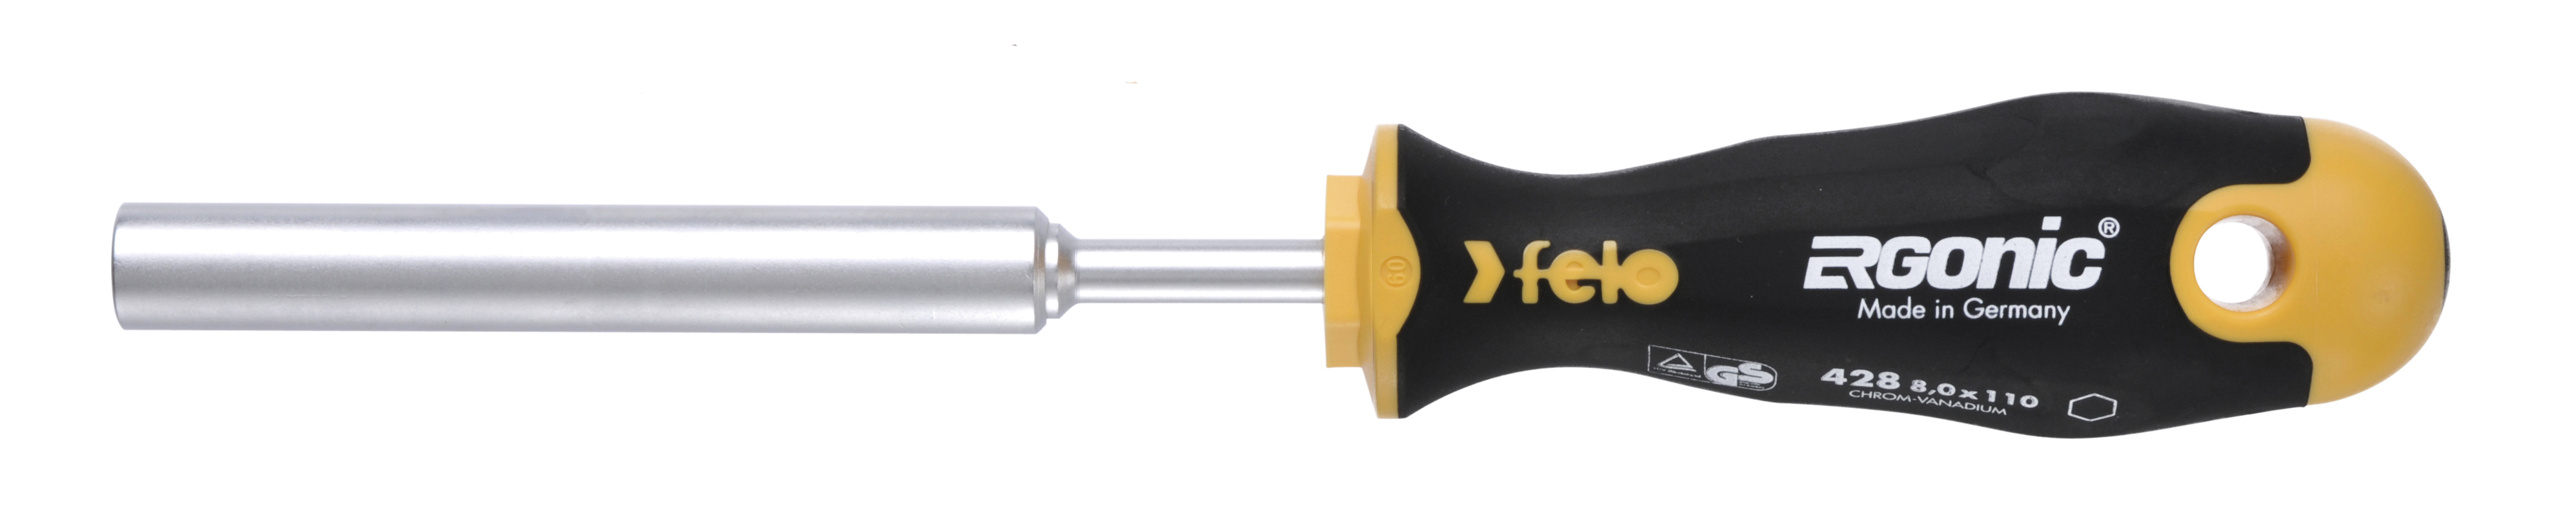 Отвертка Felo Ergonic M-TEC 42808030 торцевой ключ 8,0X110 диэлектрический ключ отвёртка izeltas 4773190060 1000v торцевой 6мм длина 220 мм